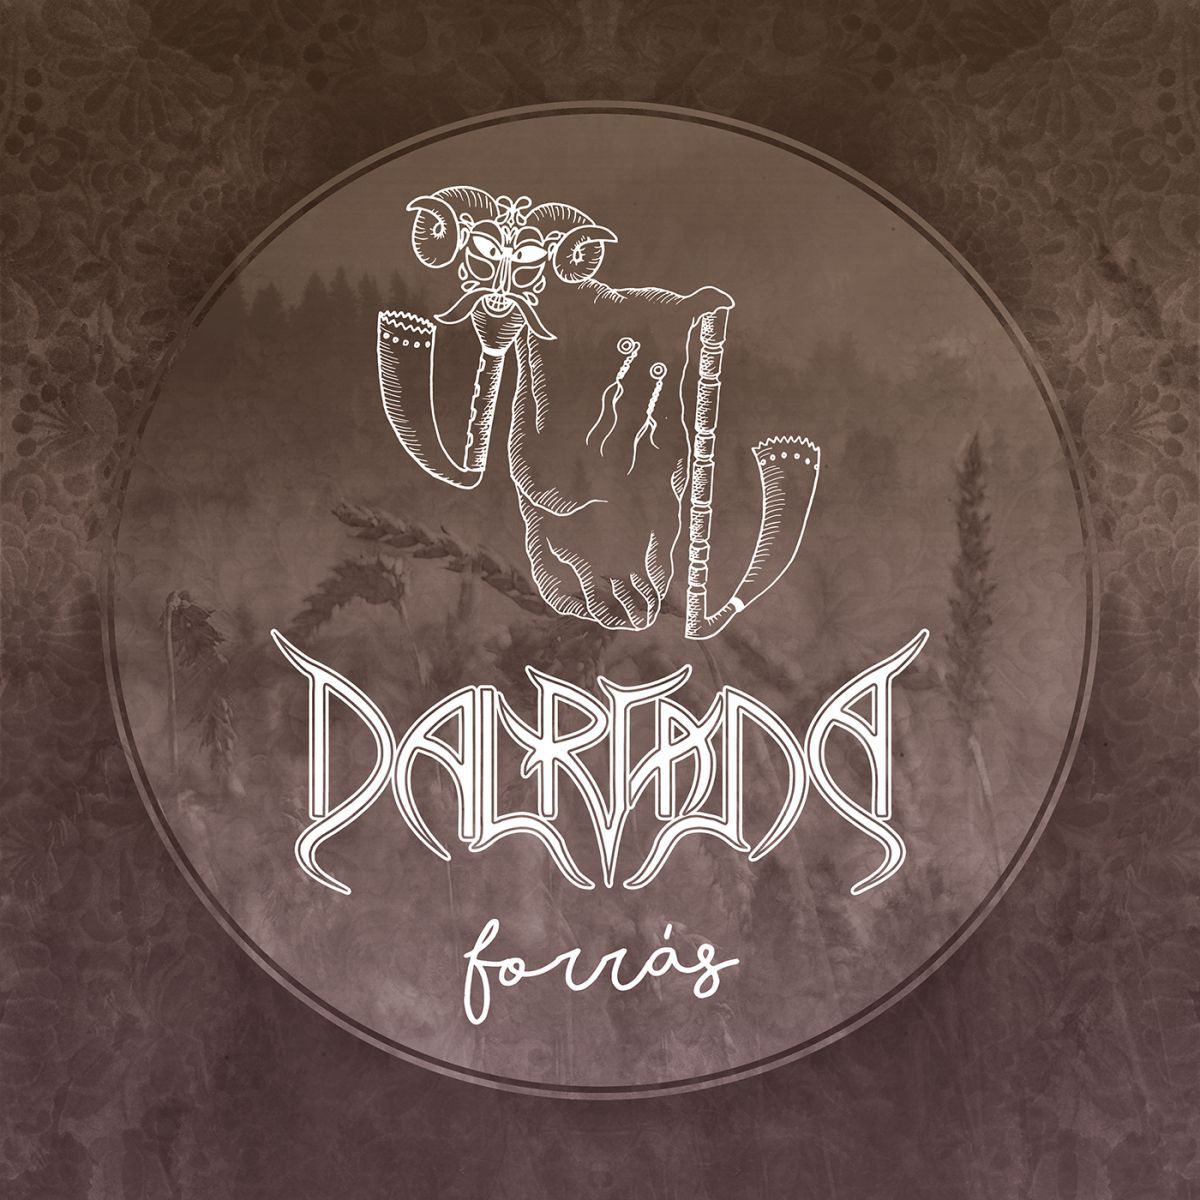 Dalriada - Forras (2016)